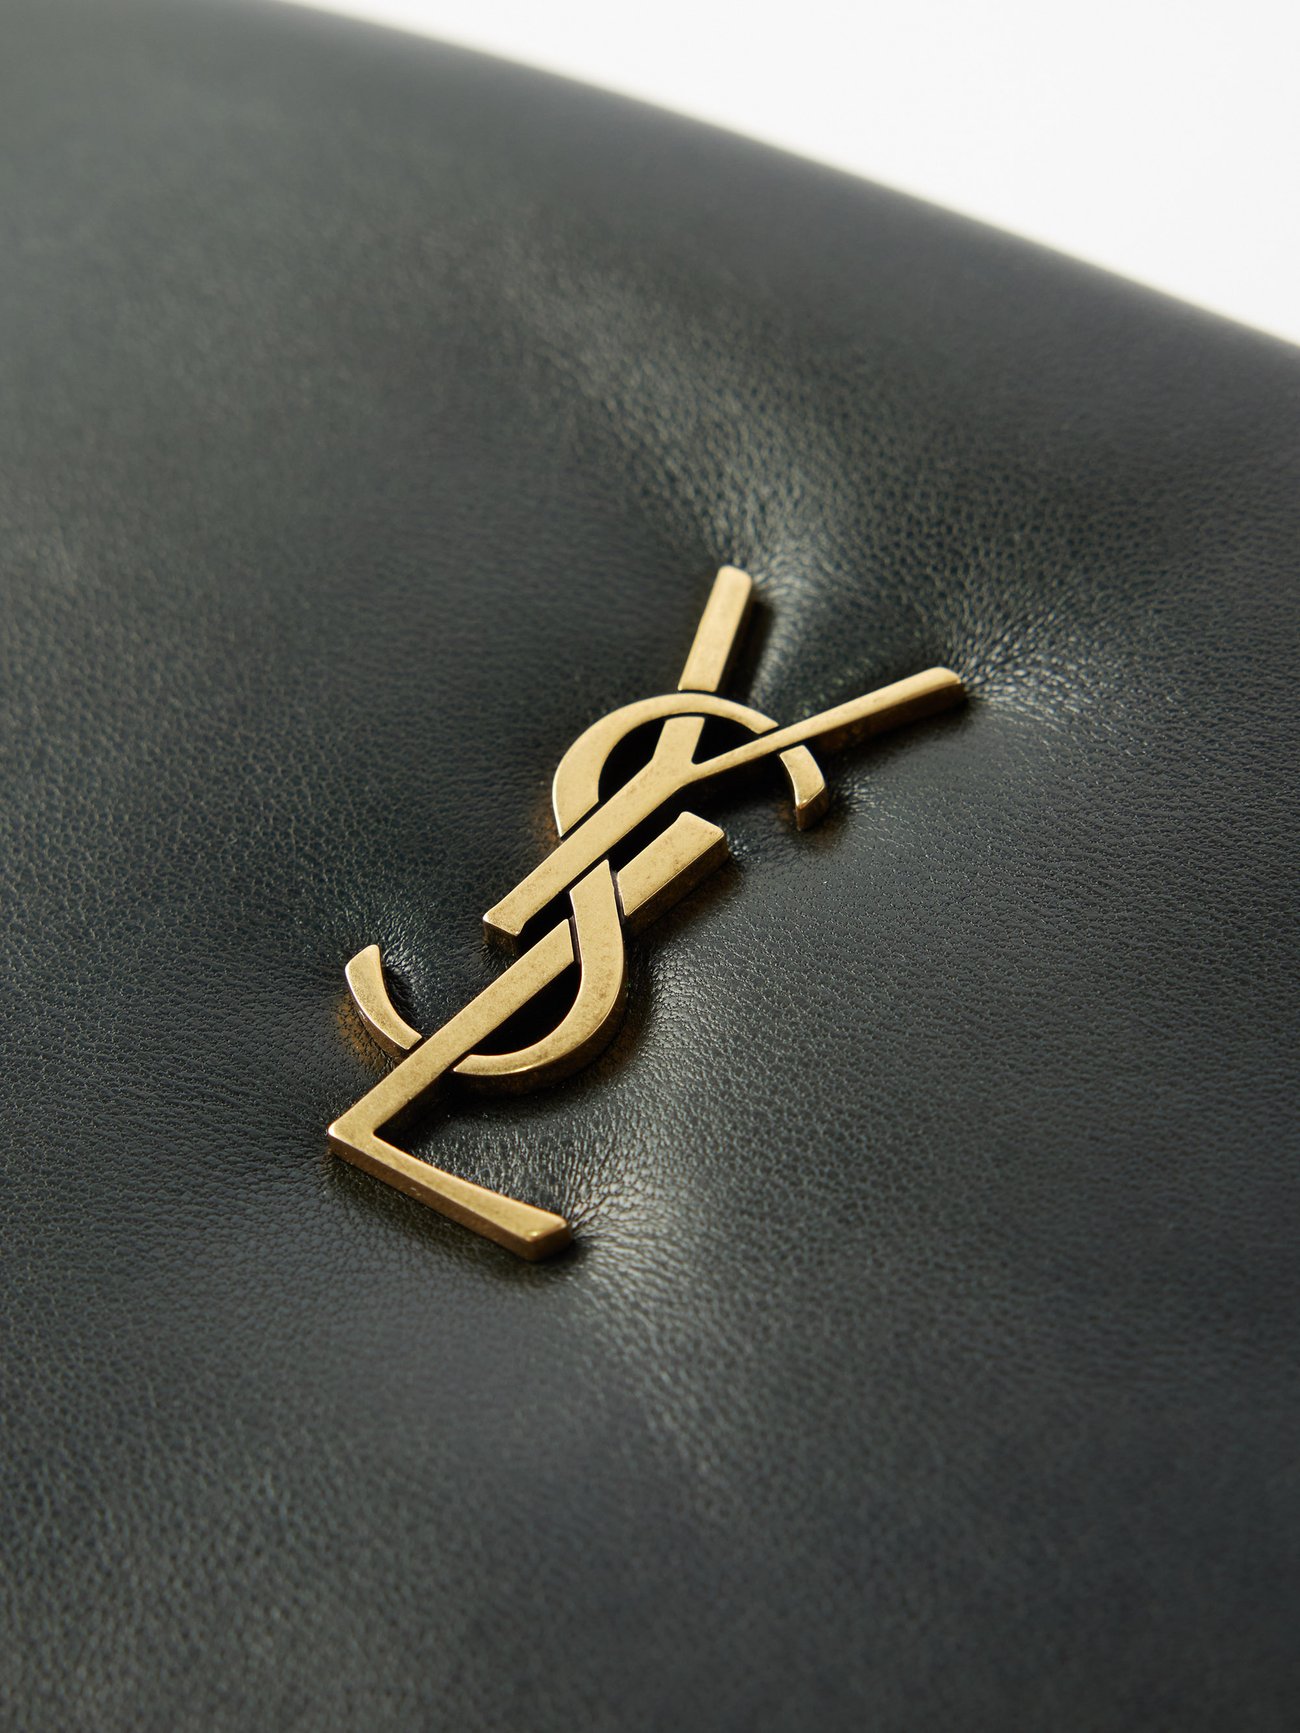 Calypso in patent leather, Saint Laurent